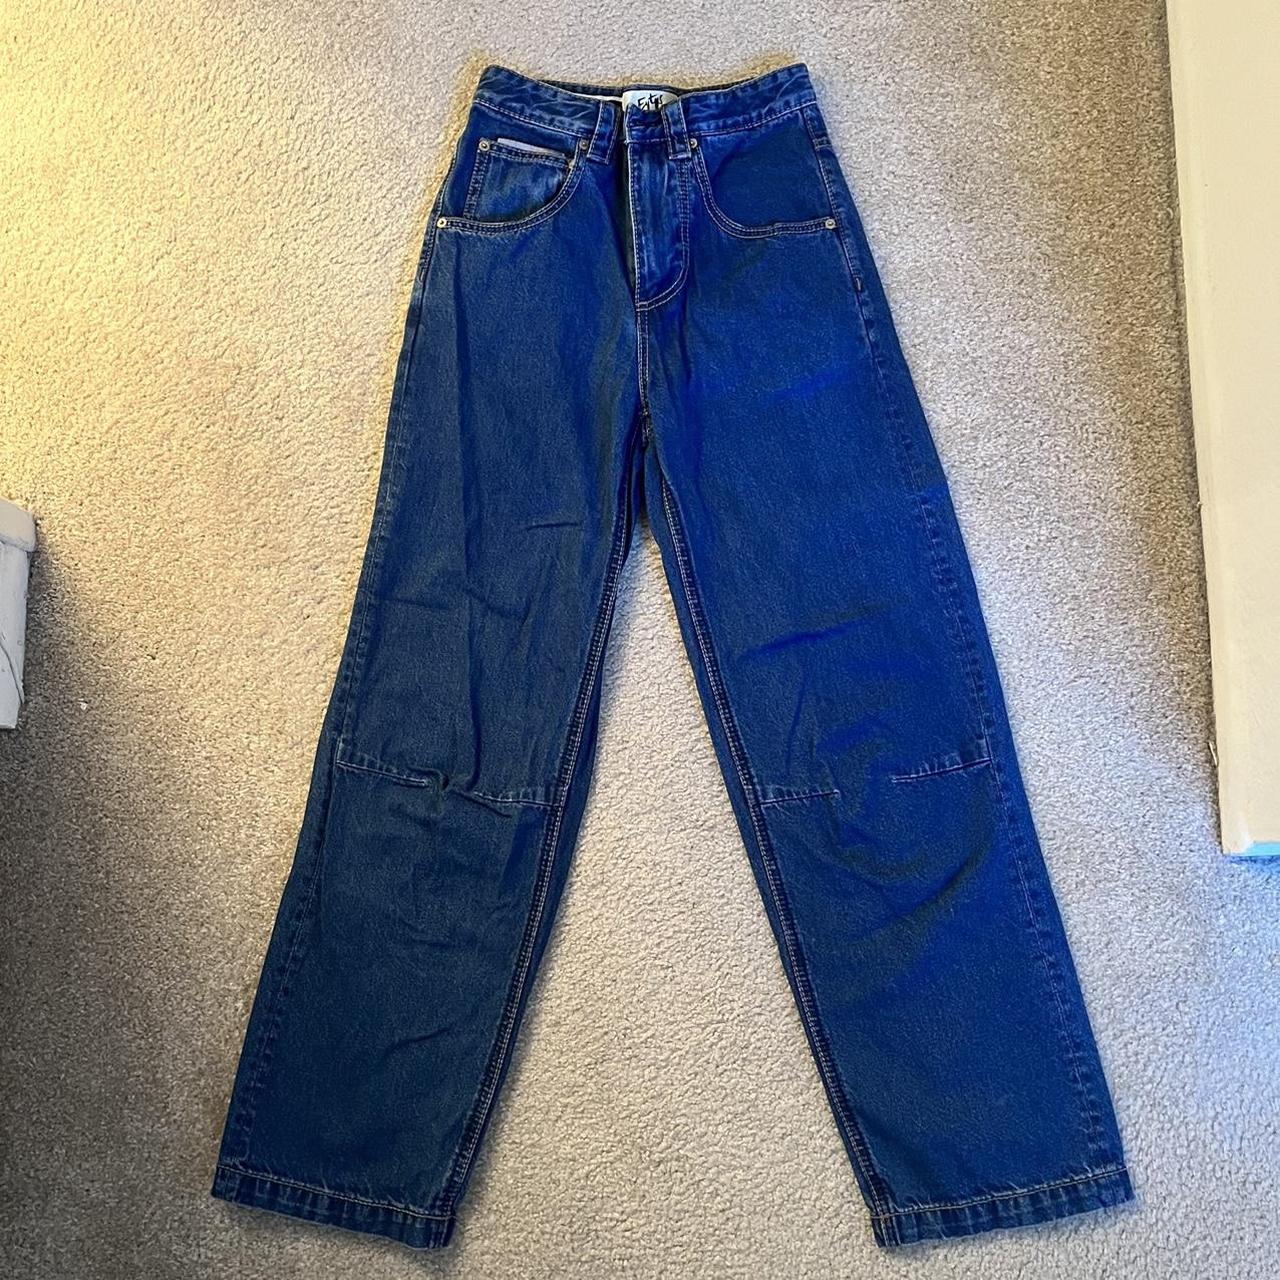 Eytys titan jeans dark wash Size 24/32 100% cotton... - Depop